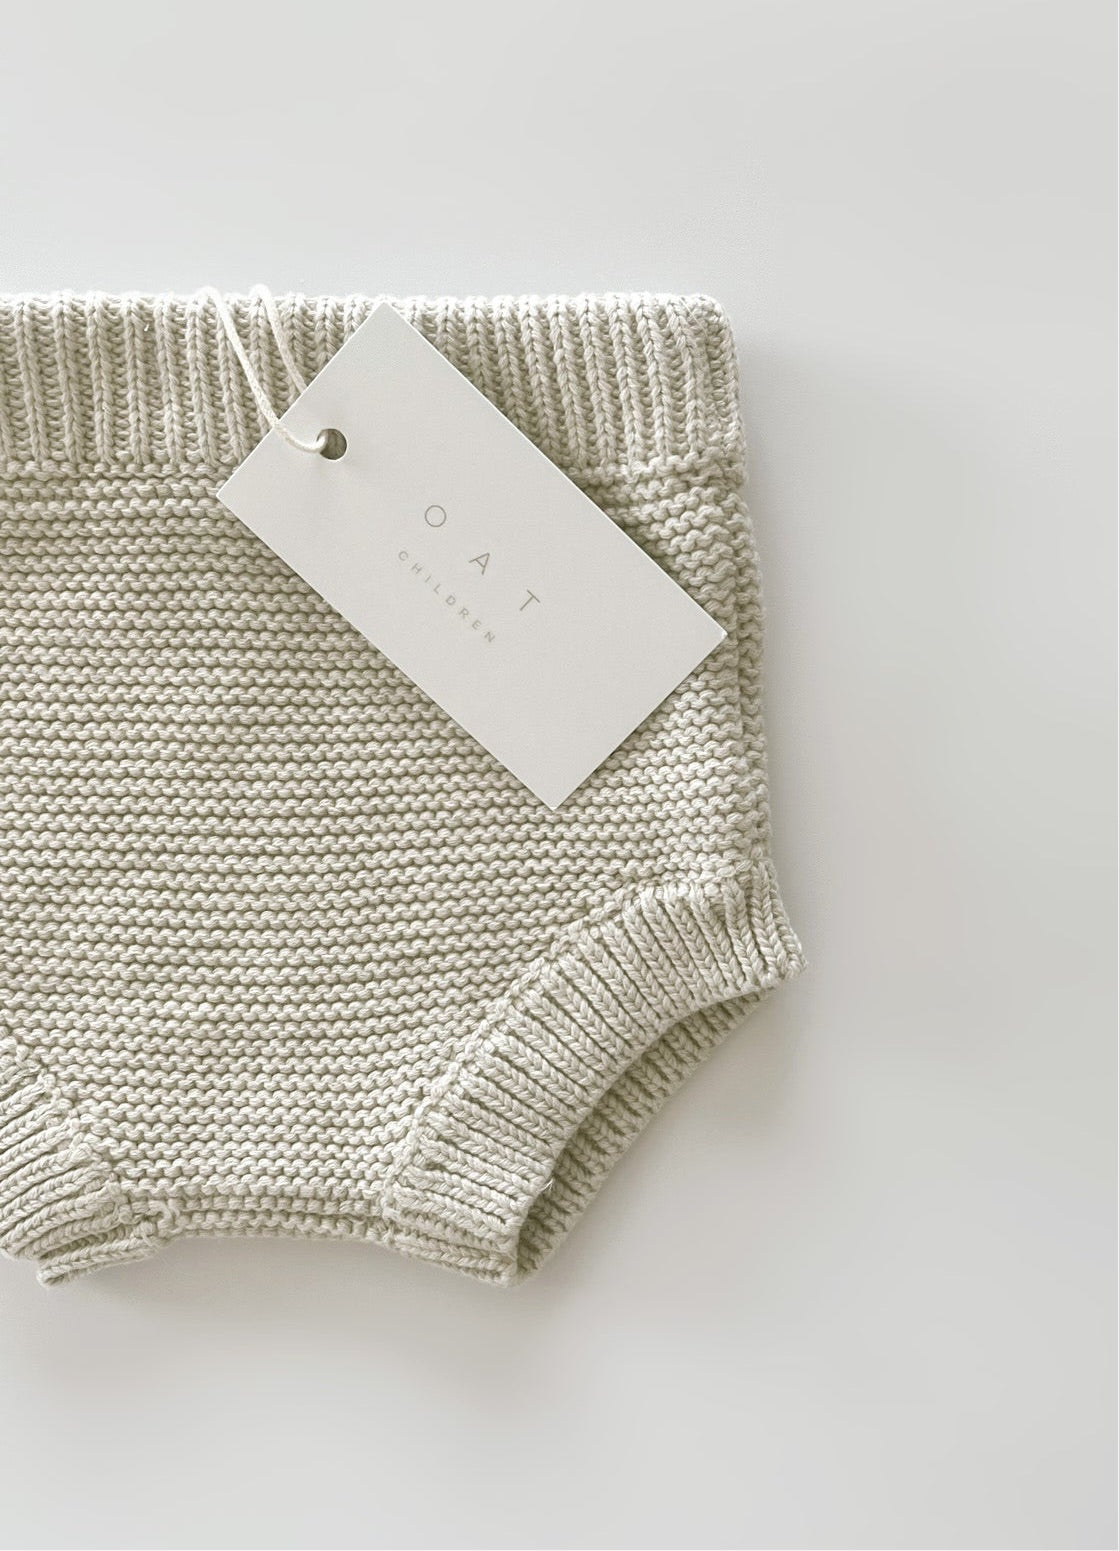 Purl Knit Bloomer Shorts ‘Gray Marle’